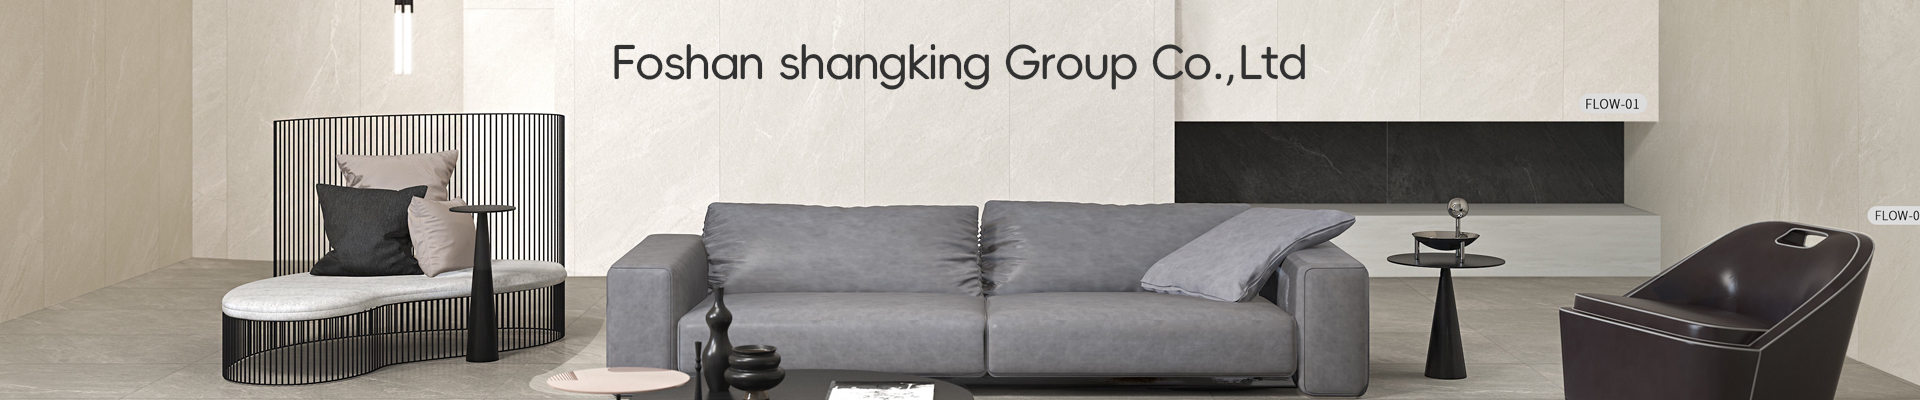 foshan shangking Group Co.,Ltd